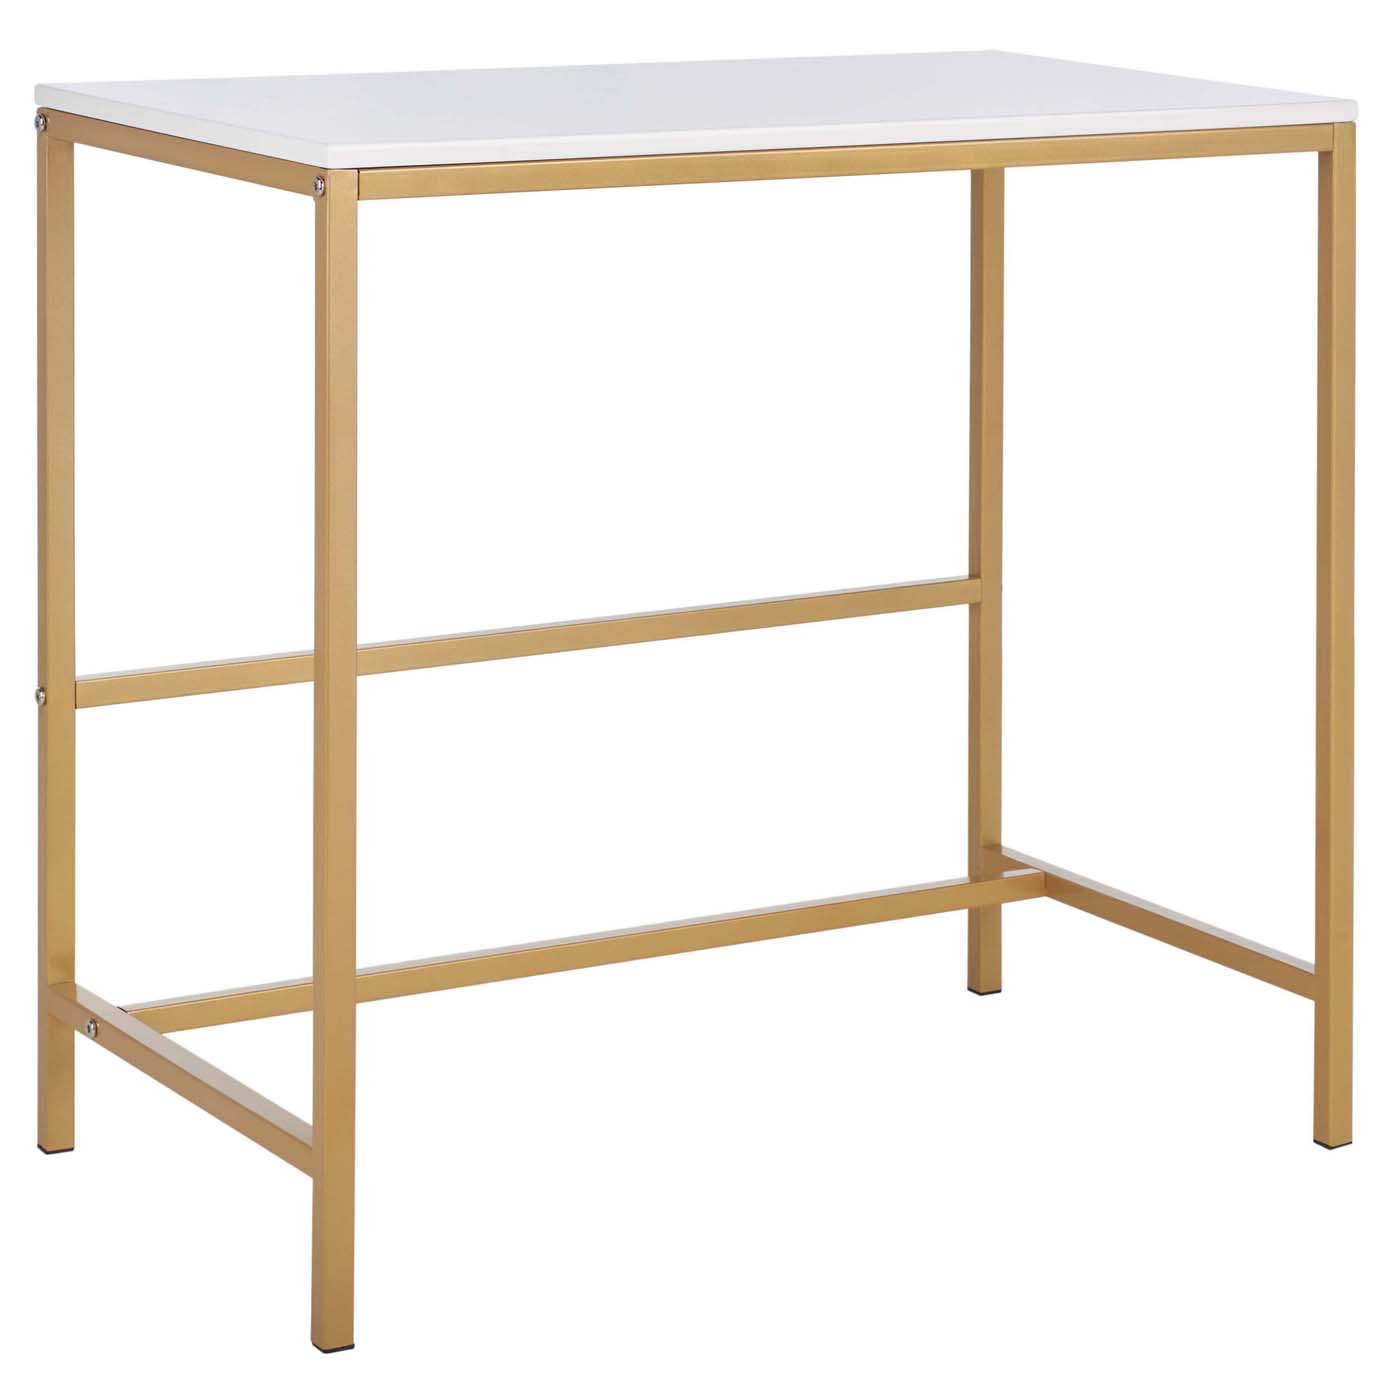 Safavieh Viv Glossy Wooden Desk , DSK5801